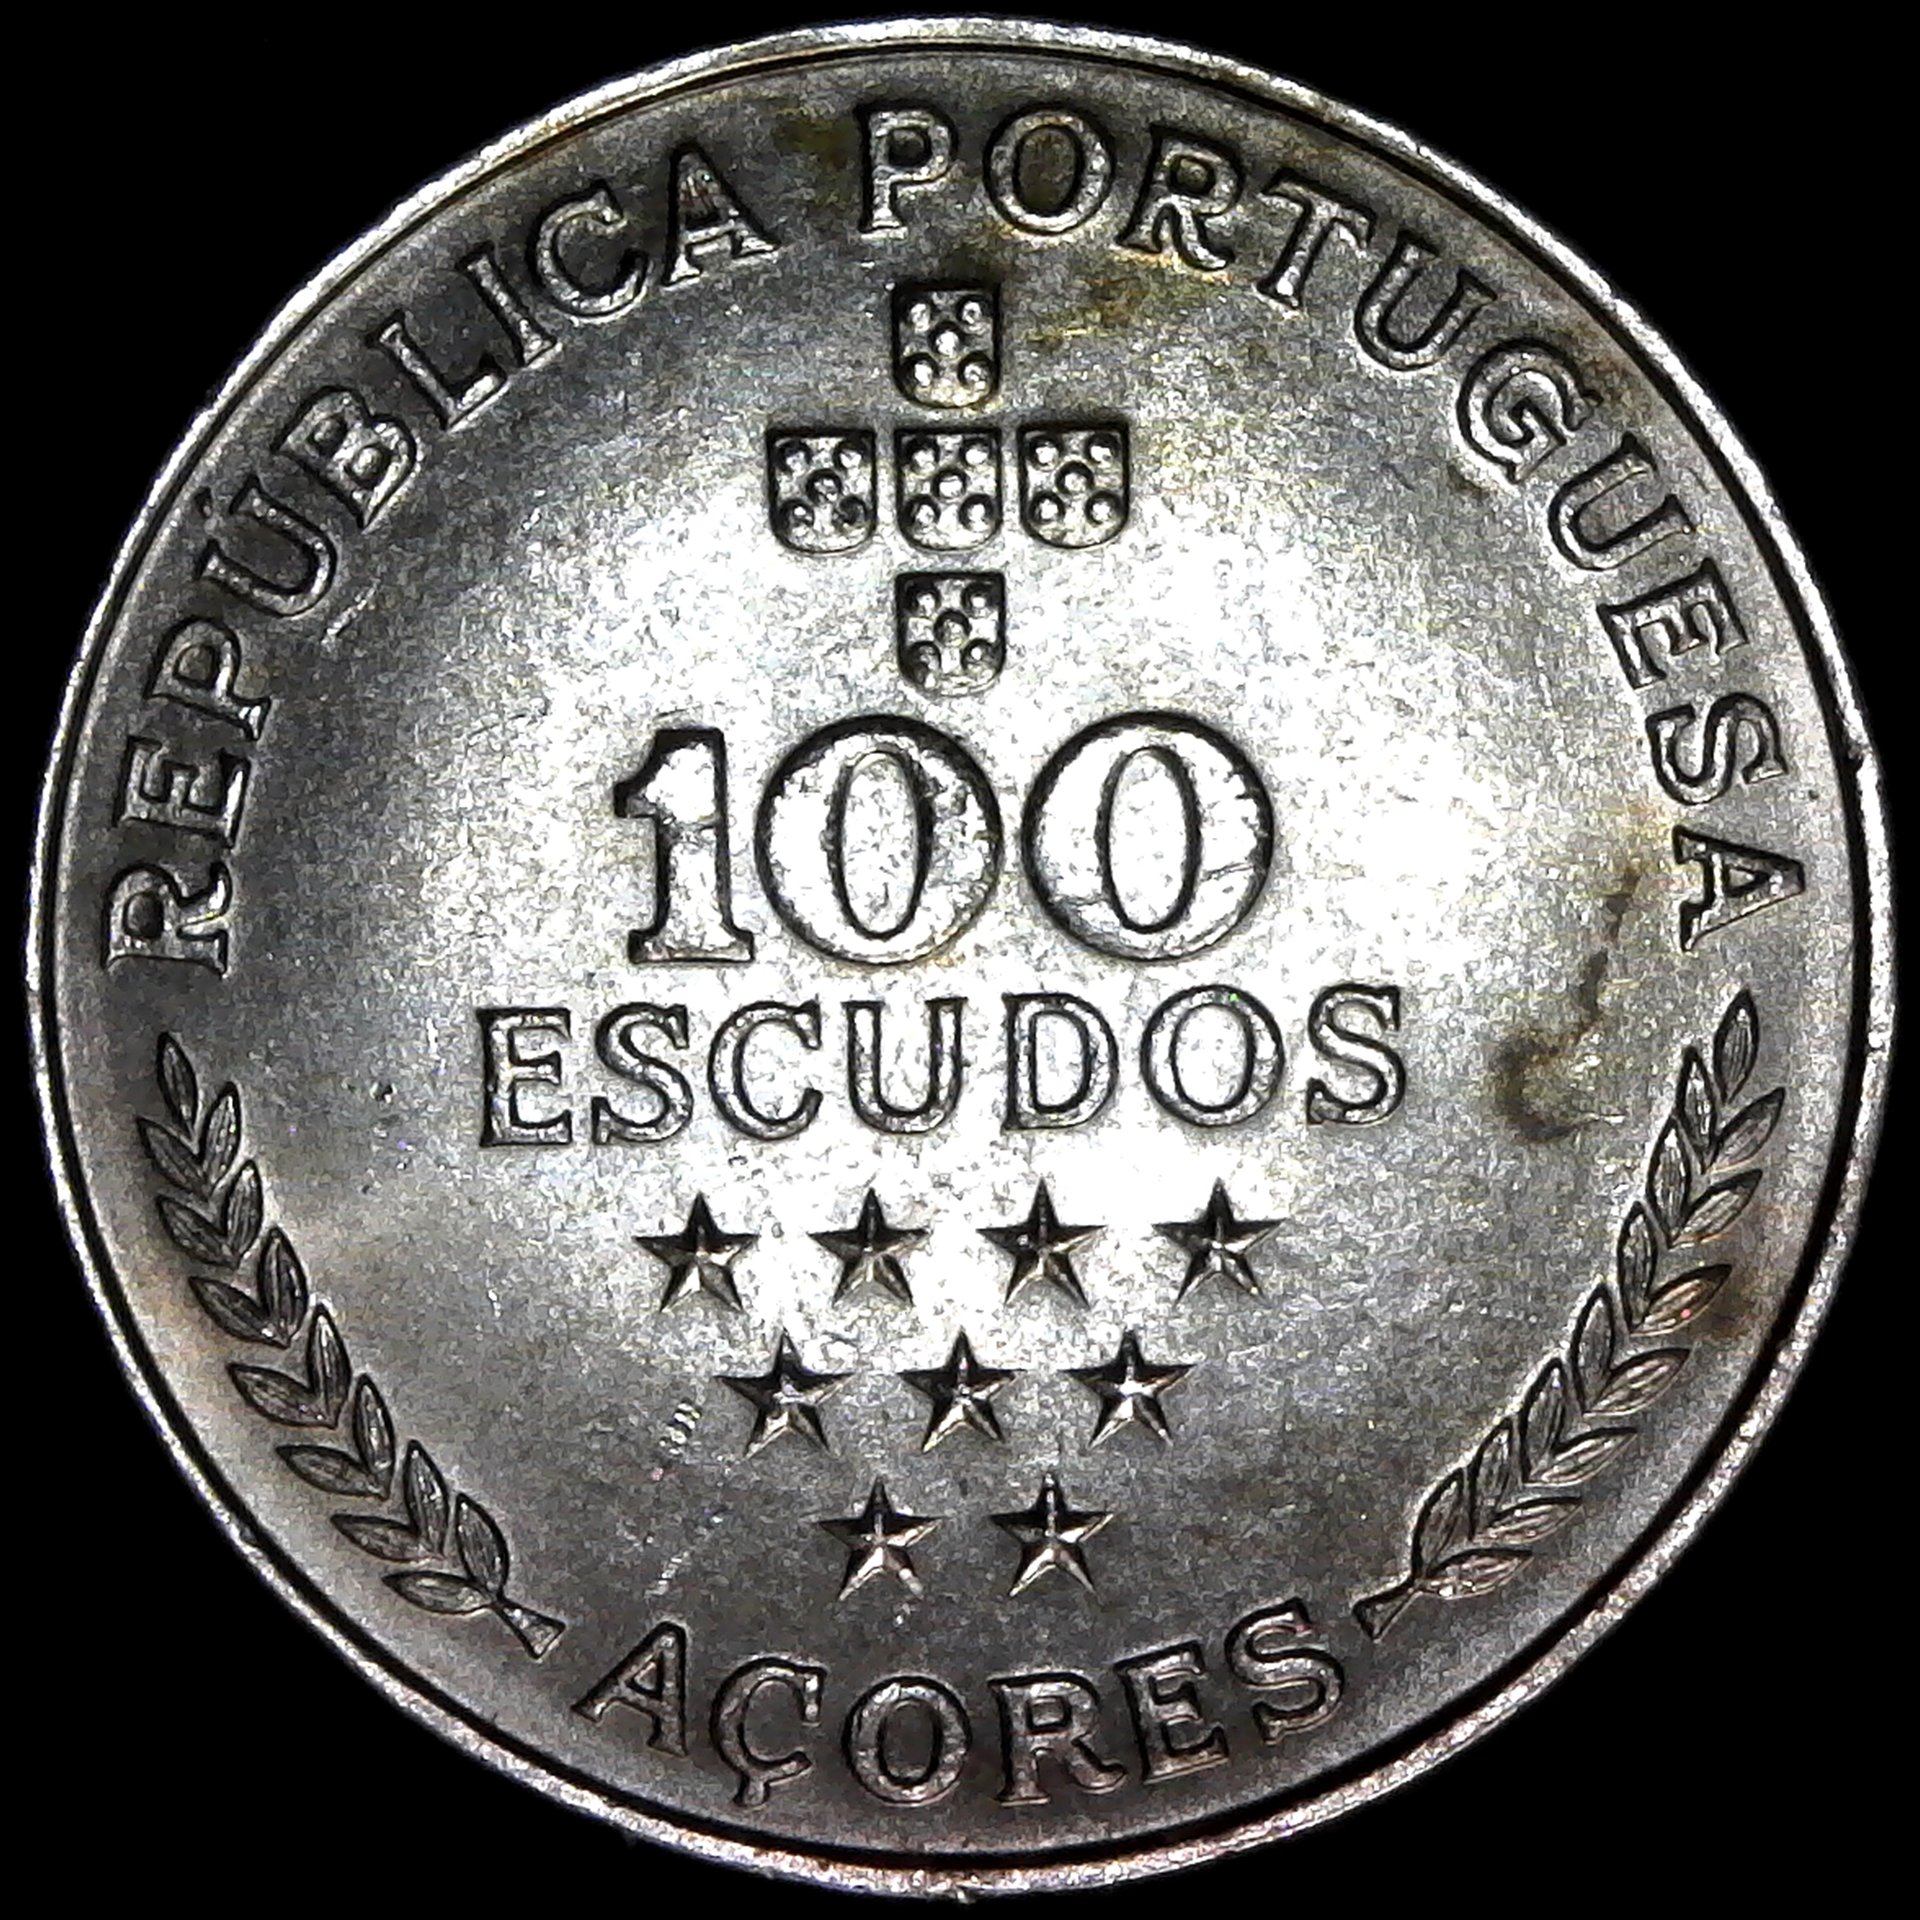 Portugal Azores 100 Escudos 1980 obv.jpg